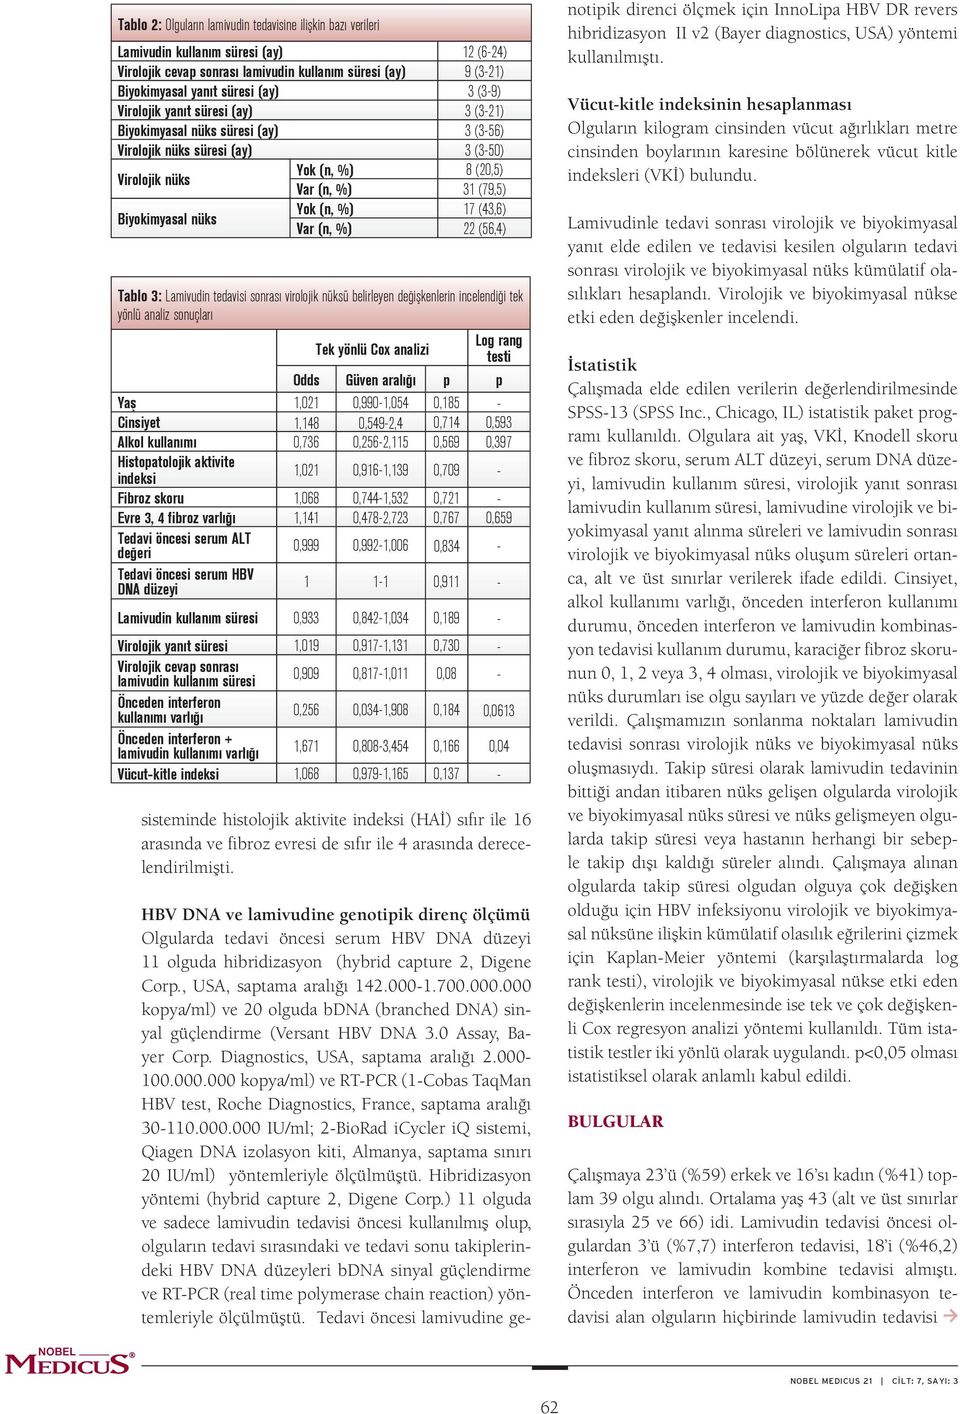 %) 17 (43,6) Var (n, %) 22 (56,4) Tablo 3: Lamivudin tedavisi sonrası virolojik nüksü belirleyen değişkenlerin incelendiği tek yönlü analiz sonuçları Tek yönlü Cox analizi Log rang testi Odds Güven